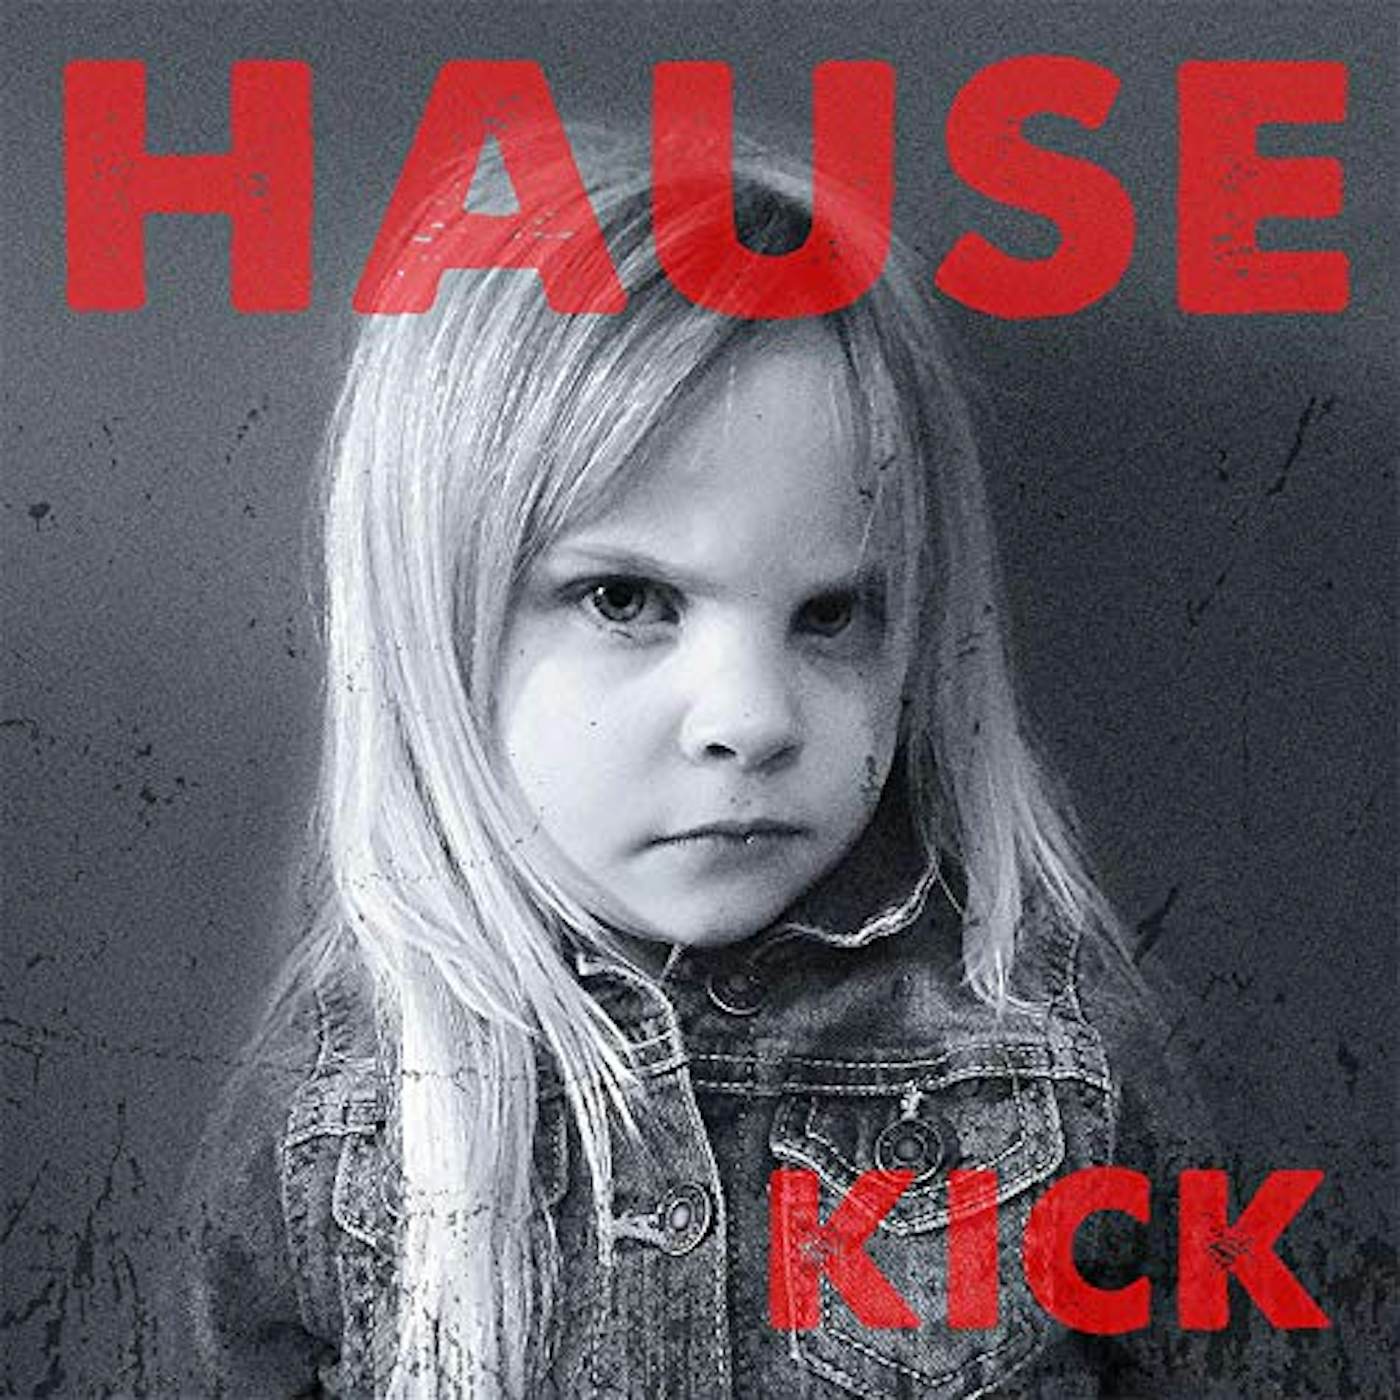 Dave Hause KICK CD